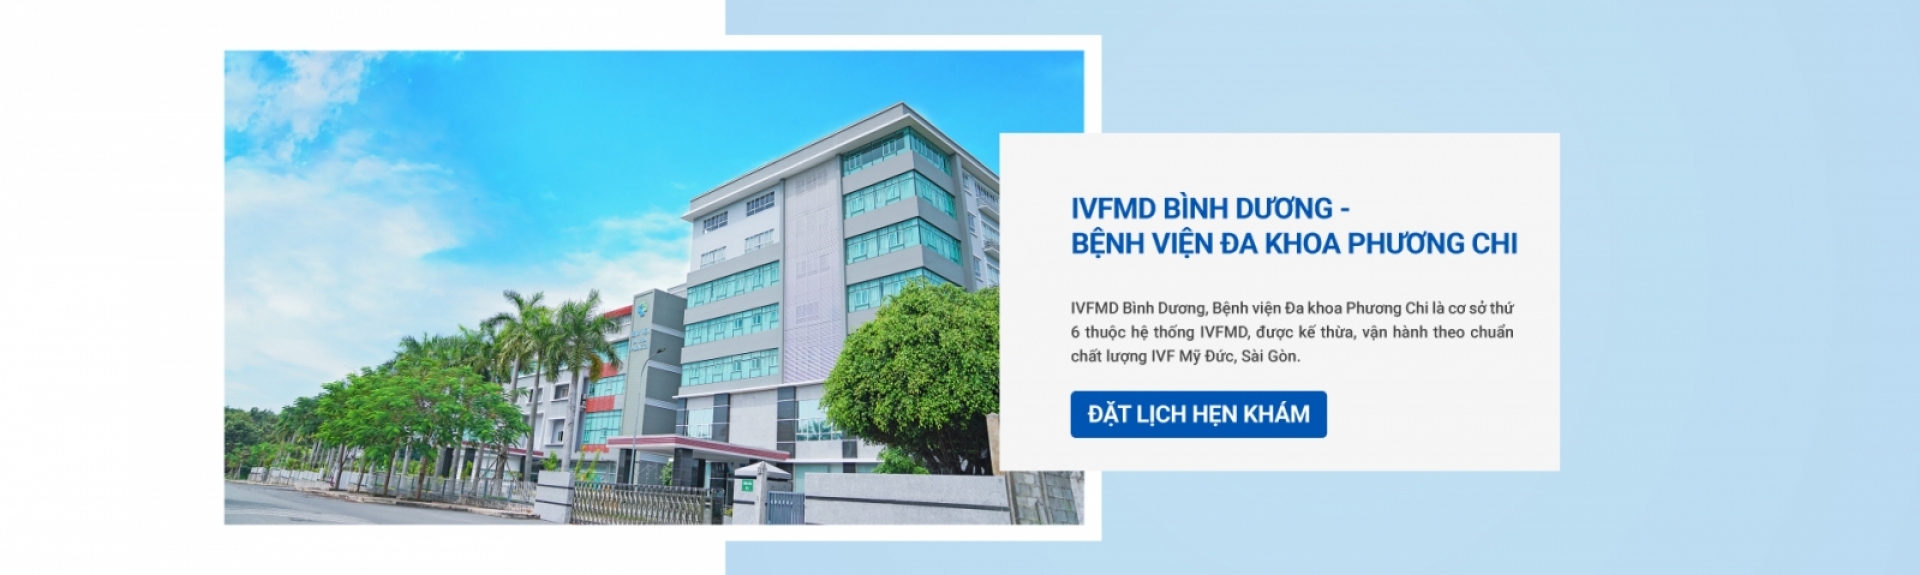 IVFMD Bình Dương - Bệnh viện Đa khoa Phương Chi